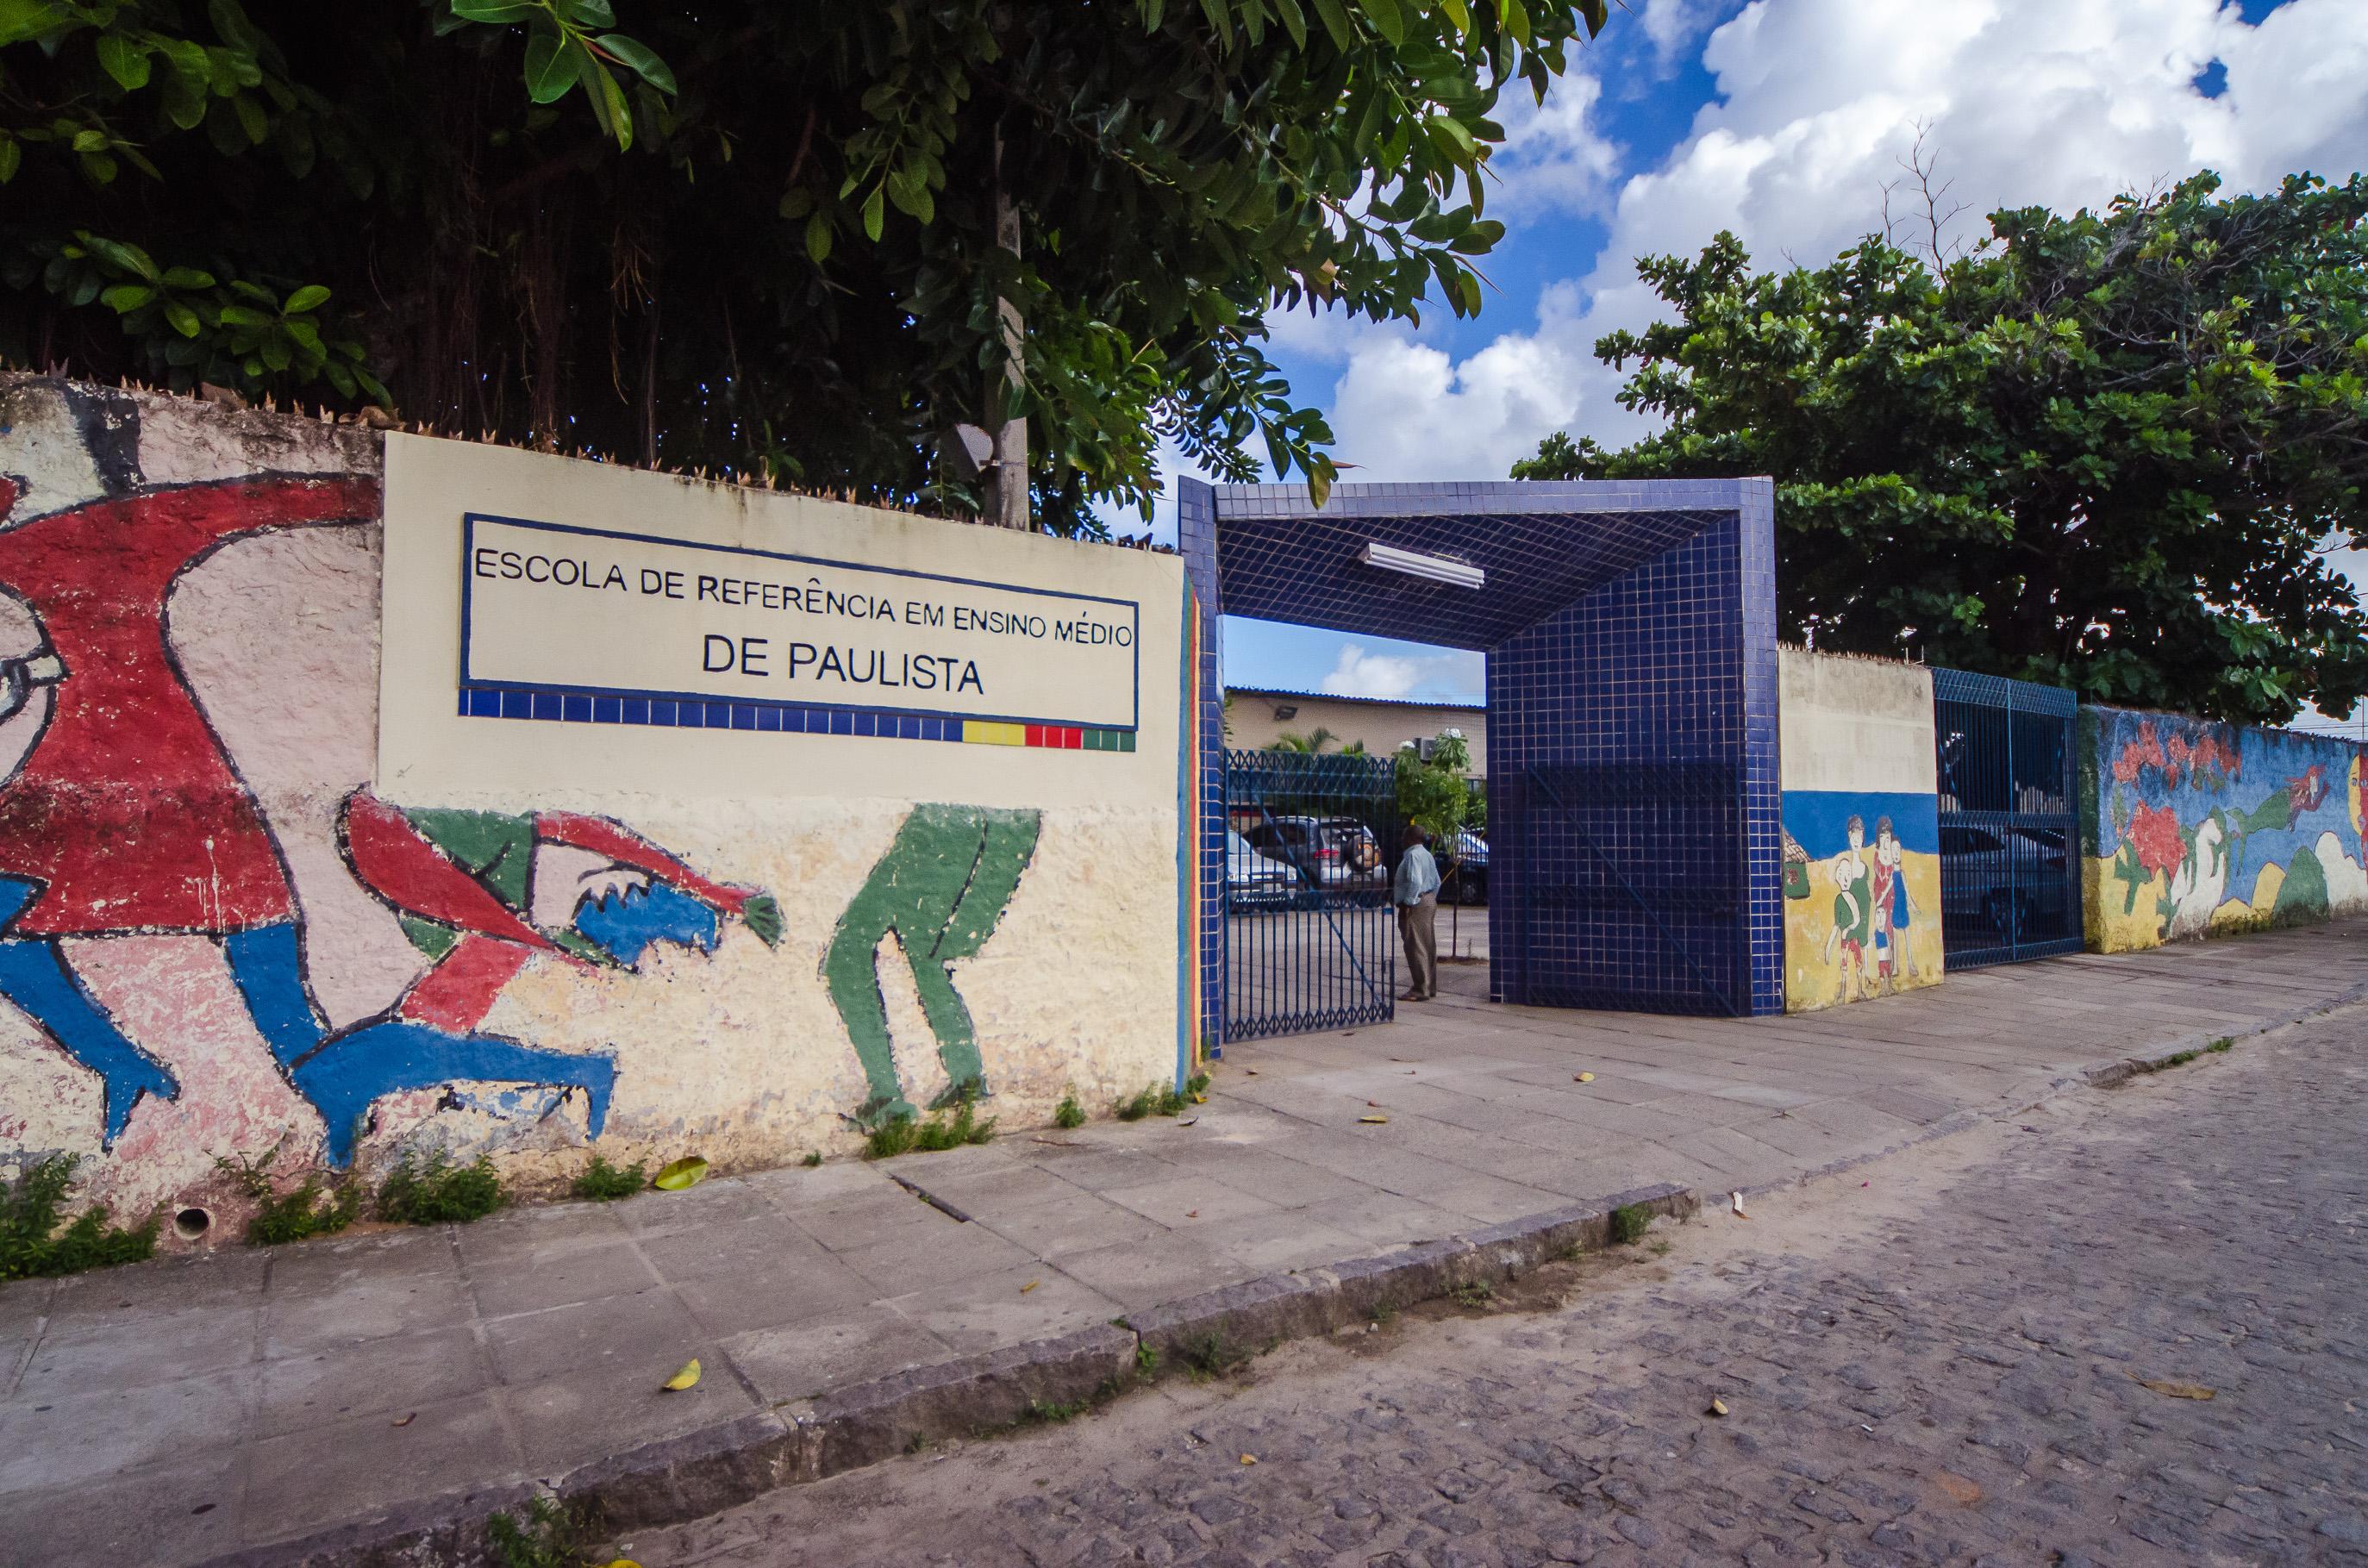 Caravana da Educação Paulista/Pedro Menezes